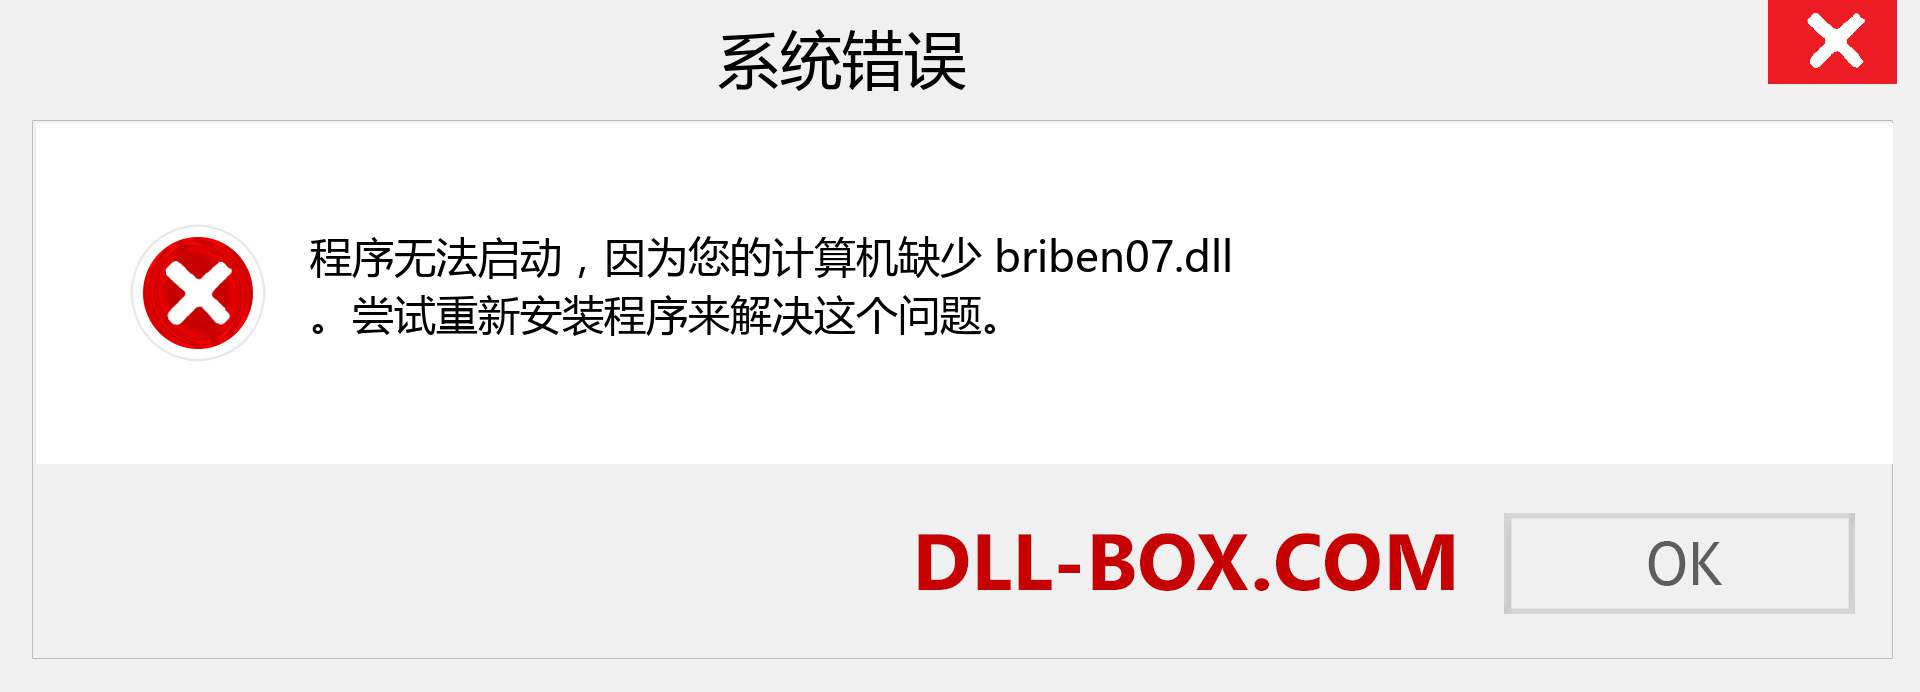 briben07.dll 文件丢失？。 适用于 Windows 7、8、10 的下载 - 修复 Windows、照片、图像上的 briben07 dll 丢失错误